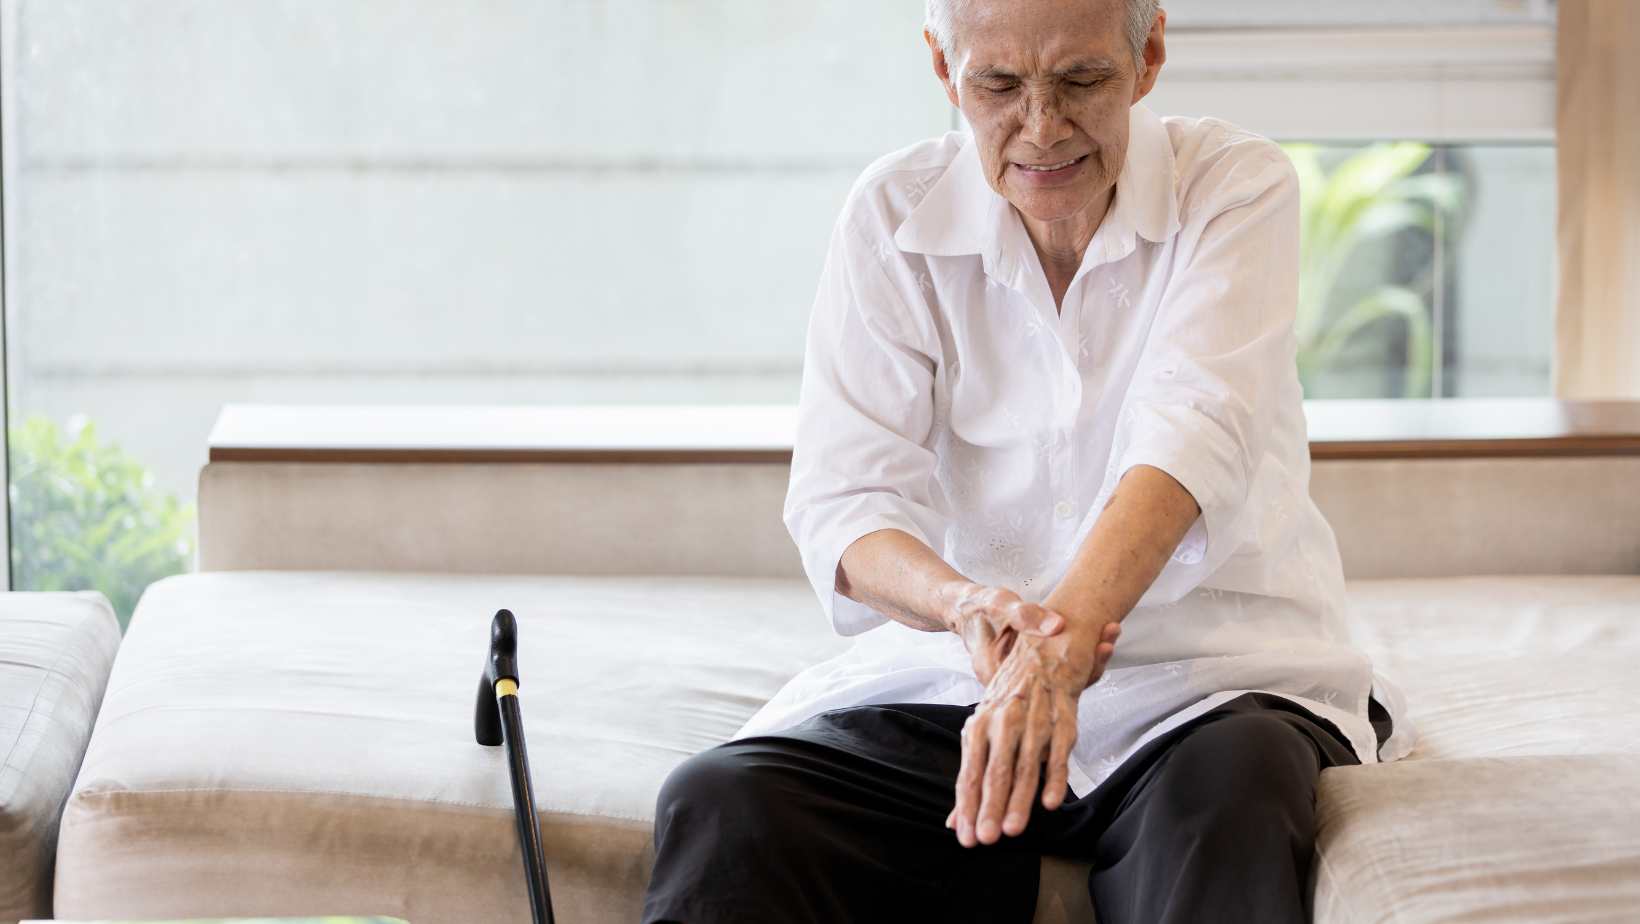 fisioterapia artritis ayudar aliviar dolor